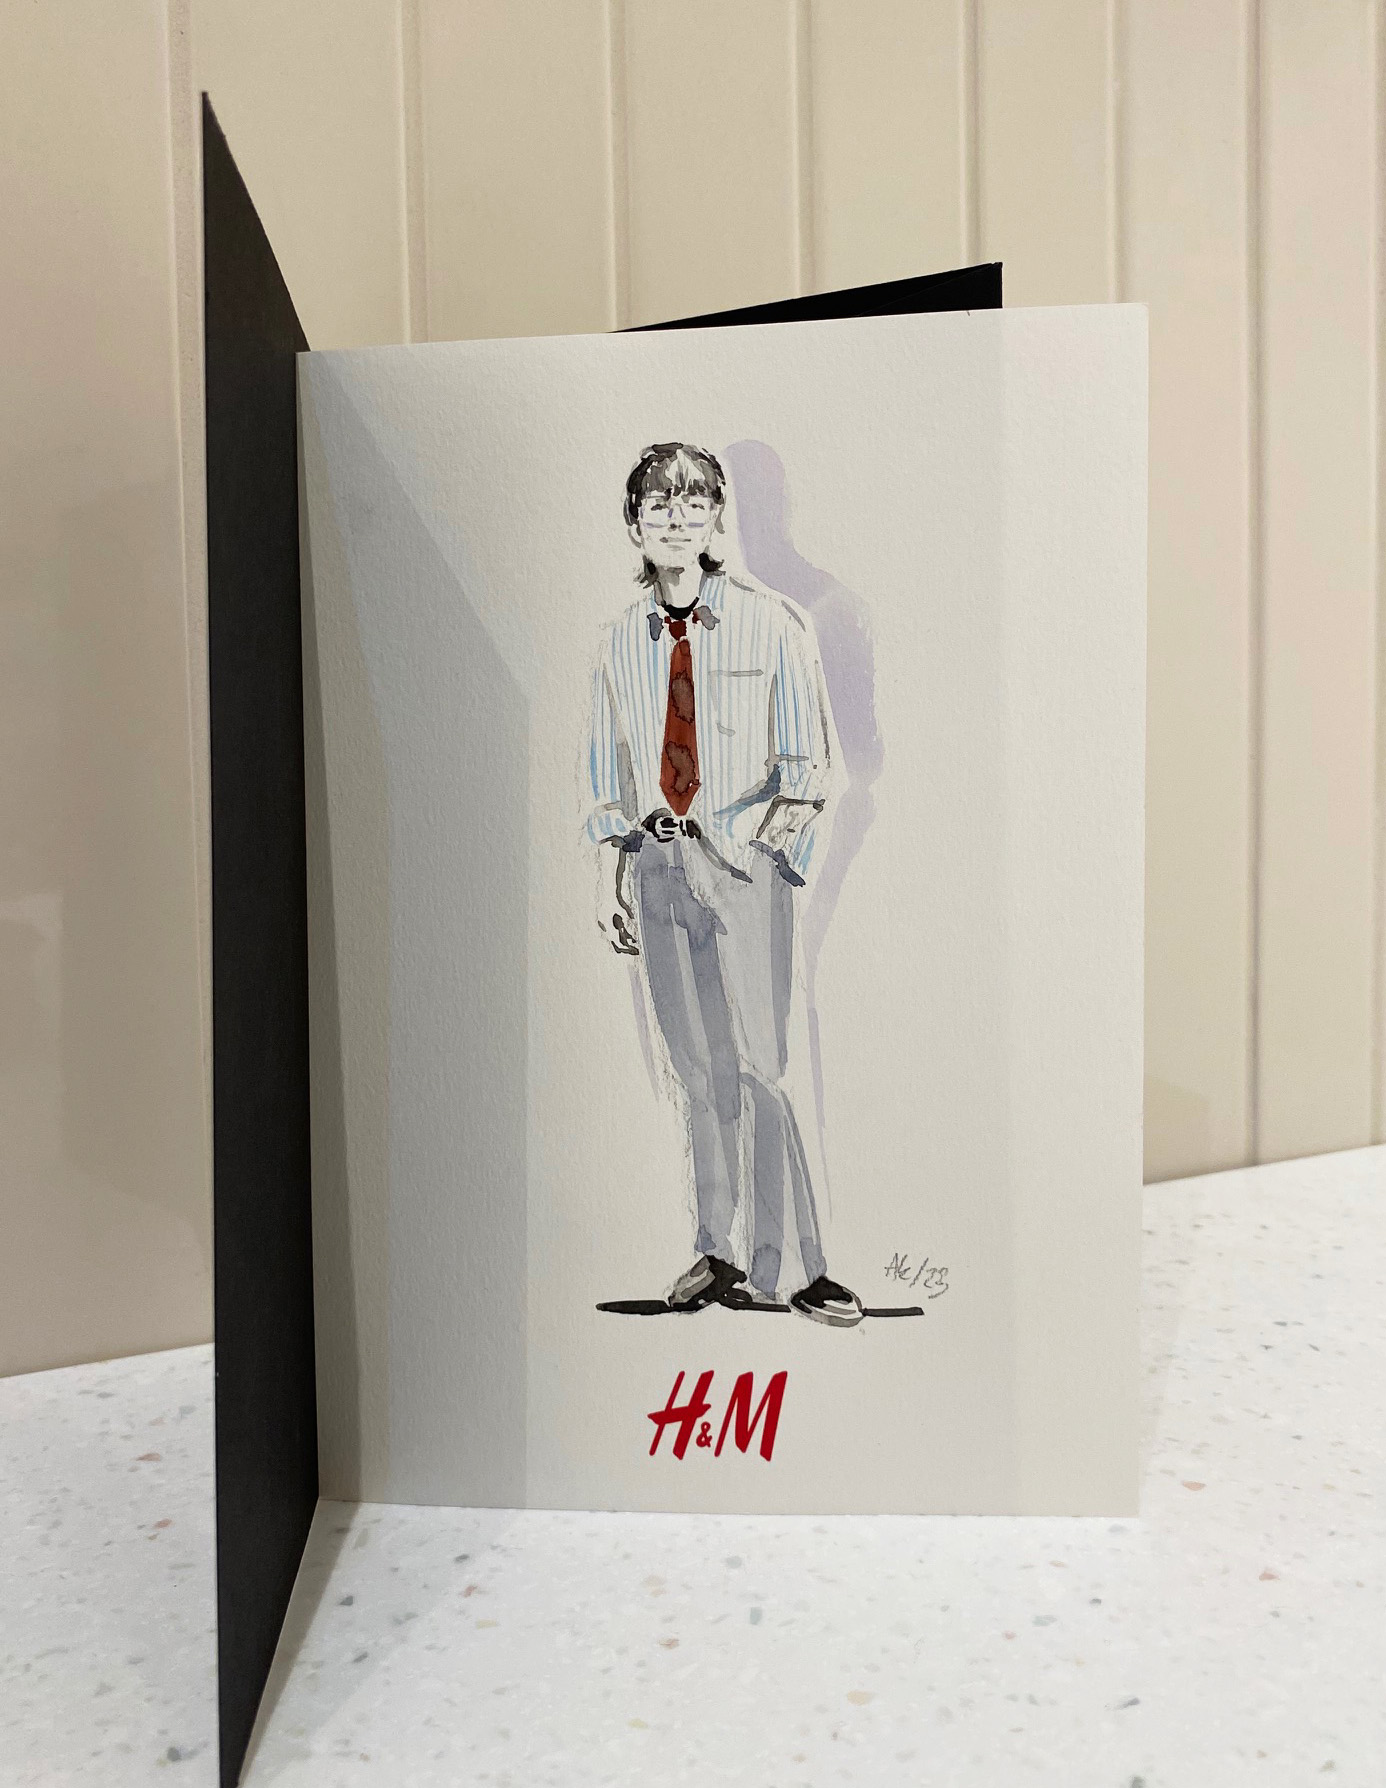 H&M Live Illustration – Berlin